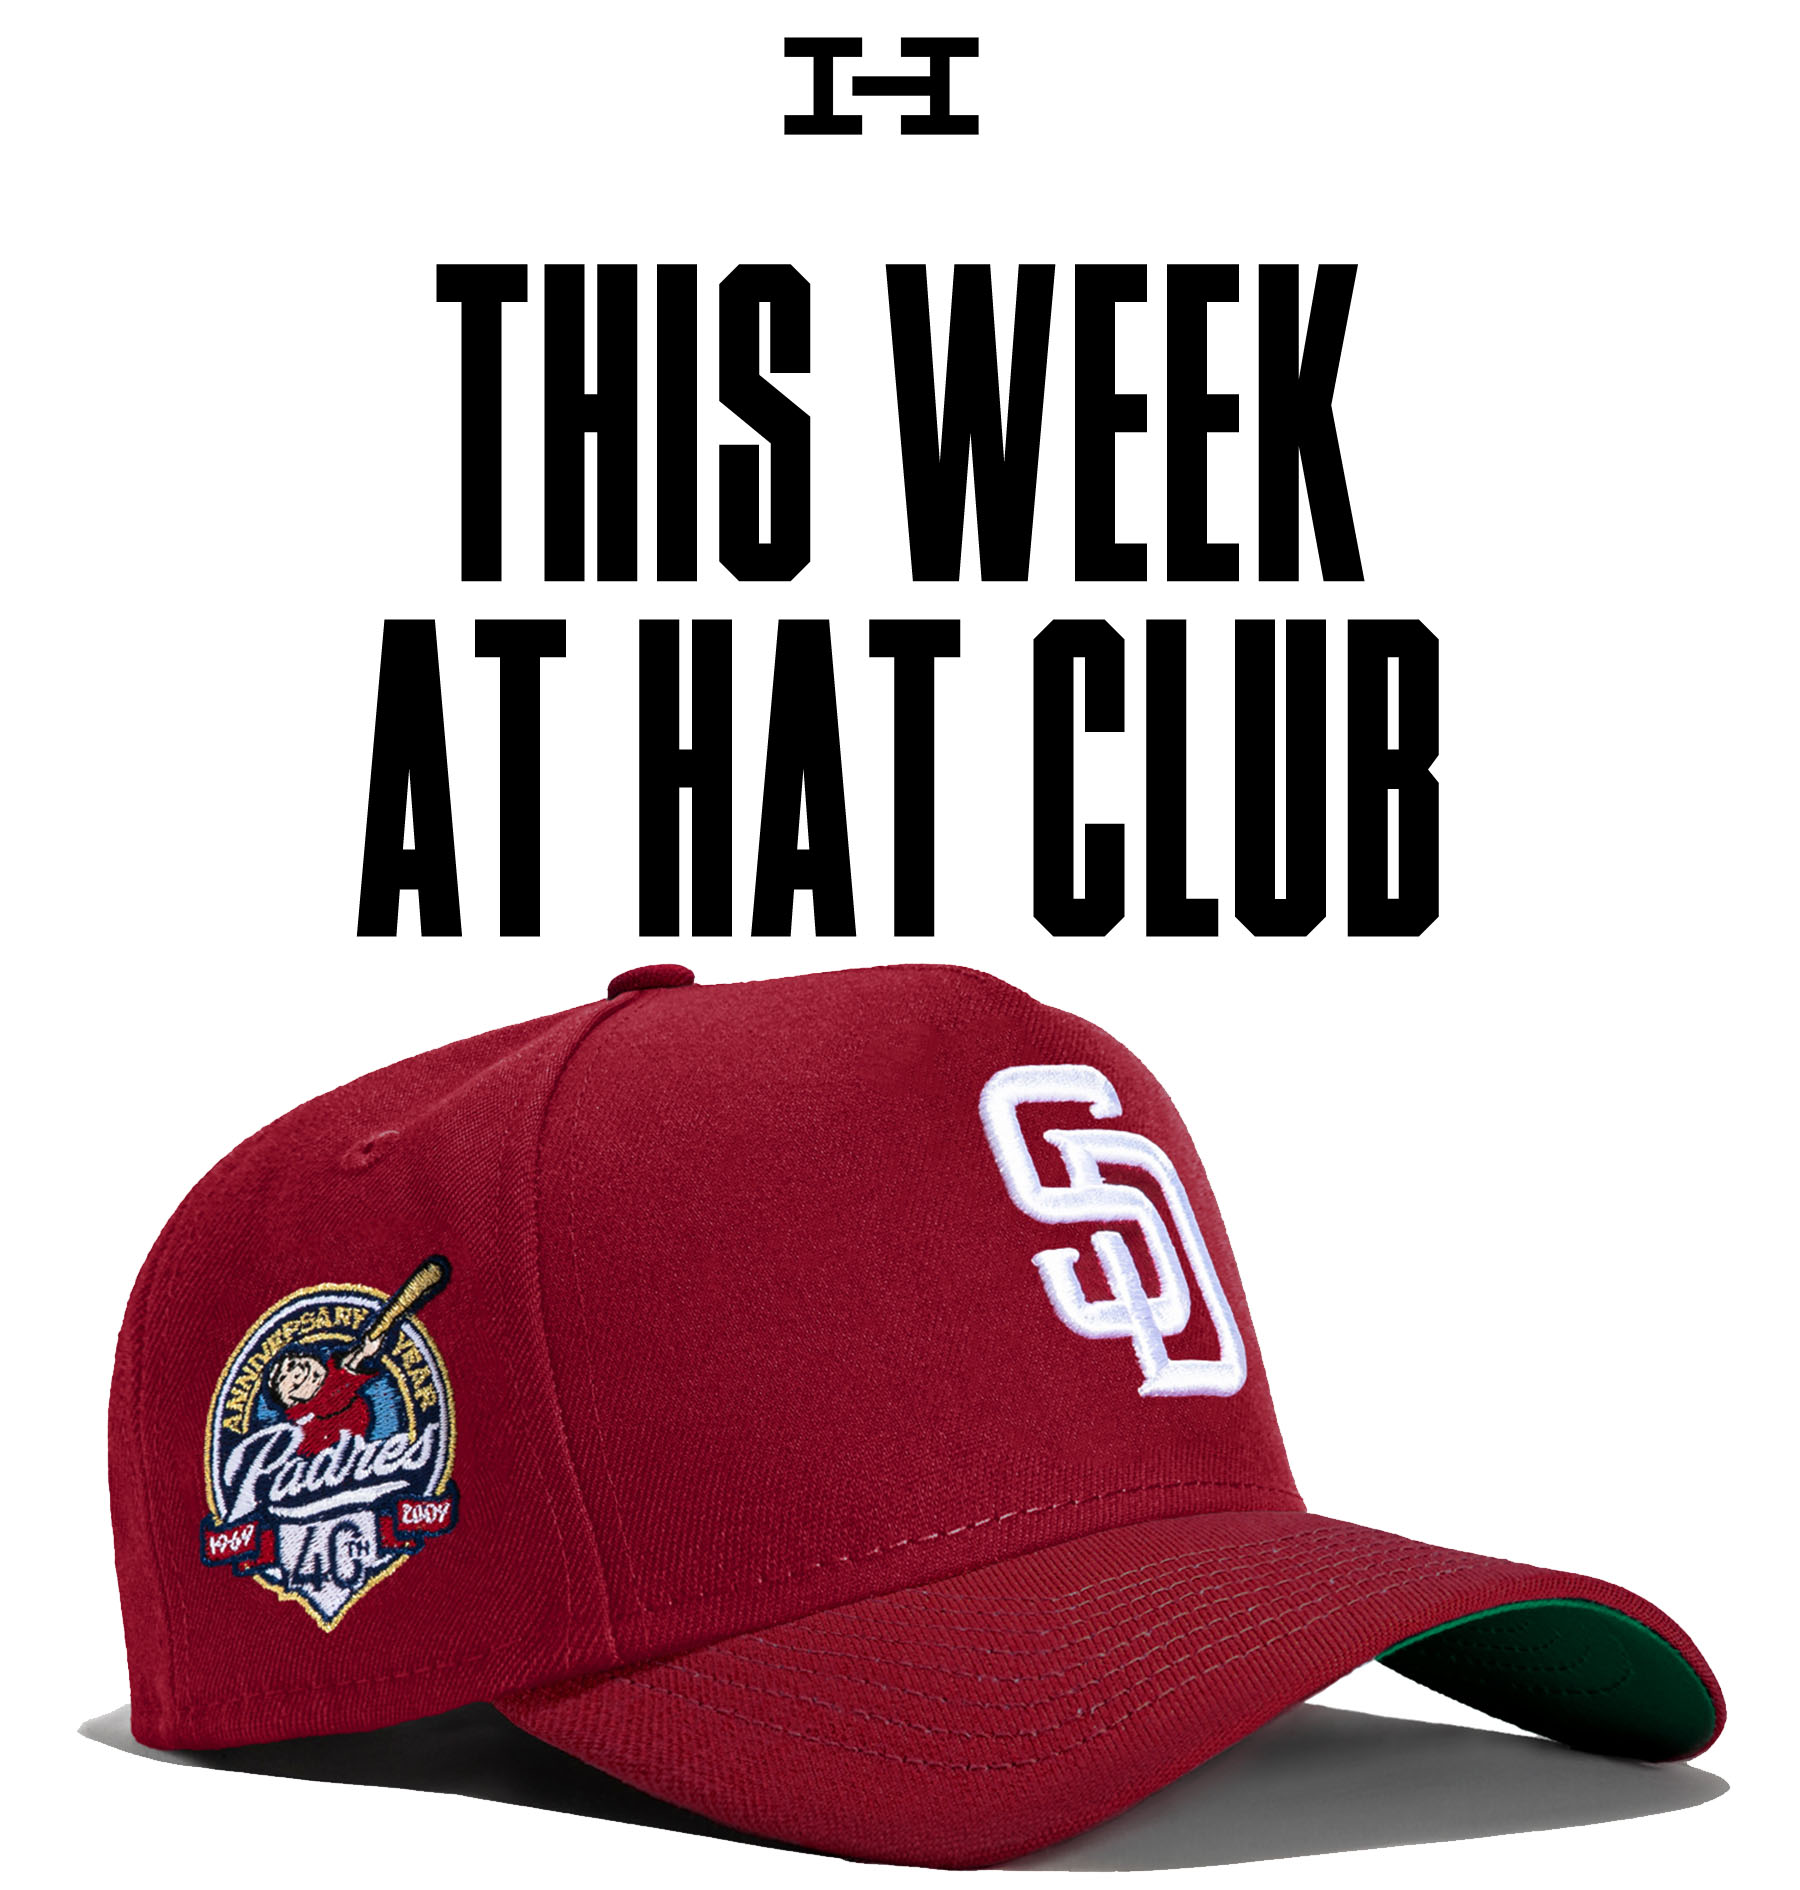 Hat Club Houston Astros Fall Tone 7 1/2